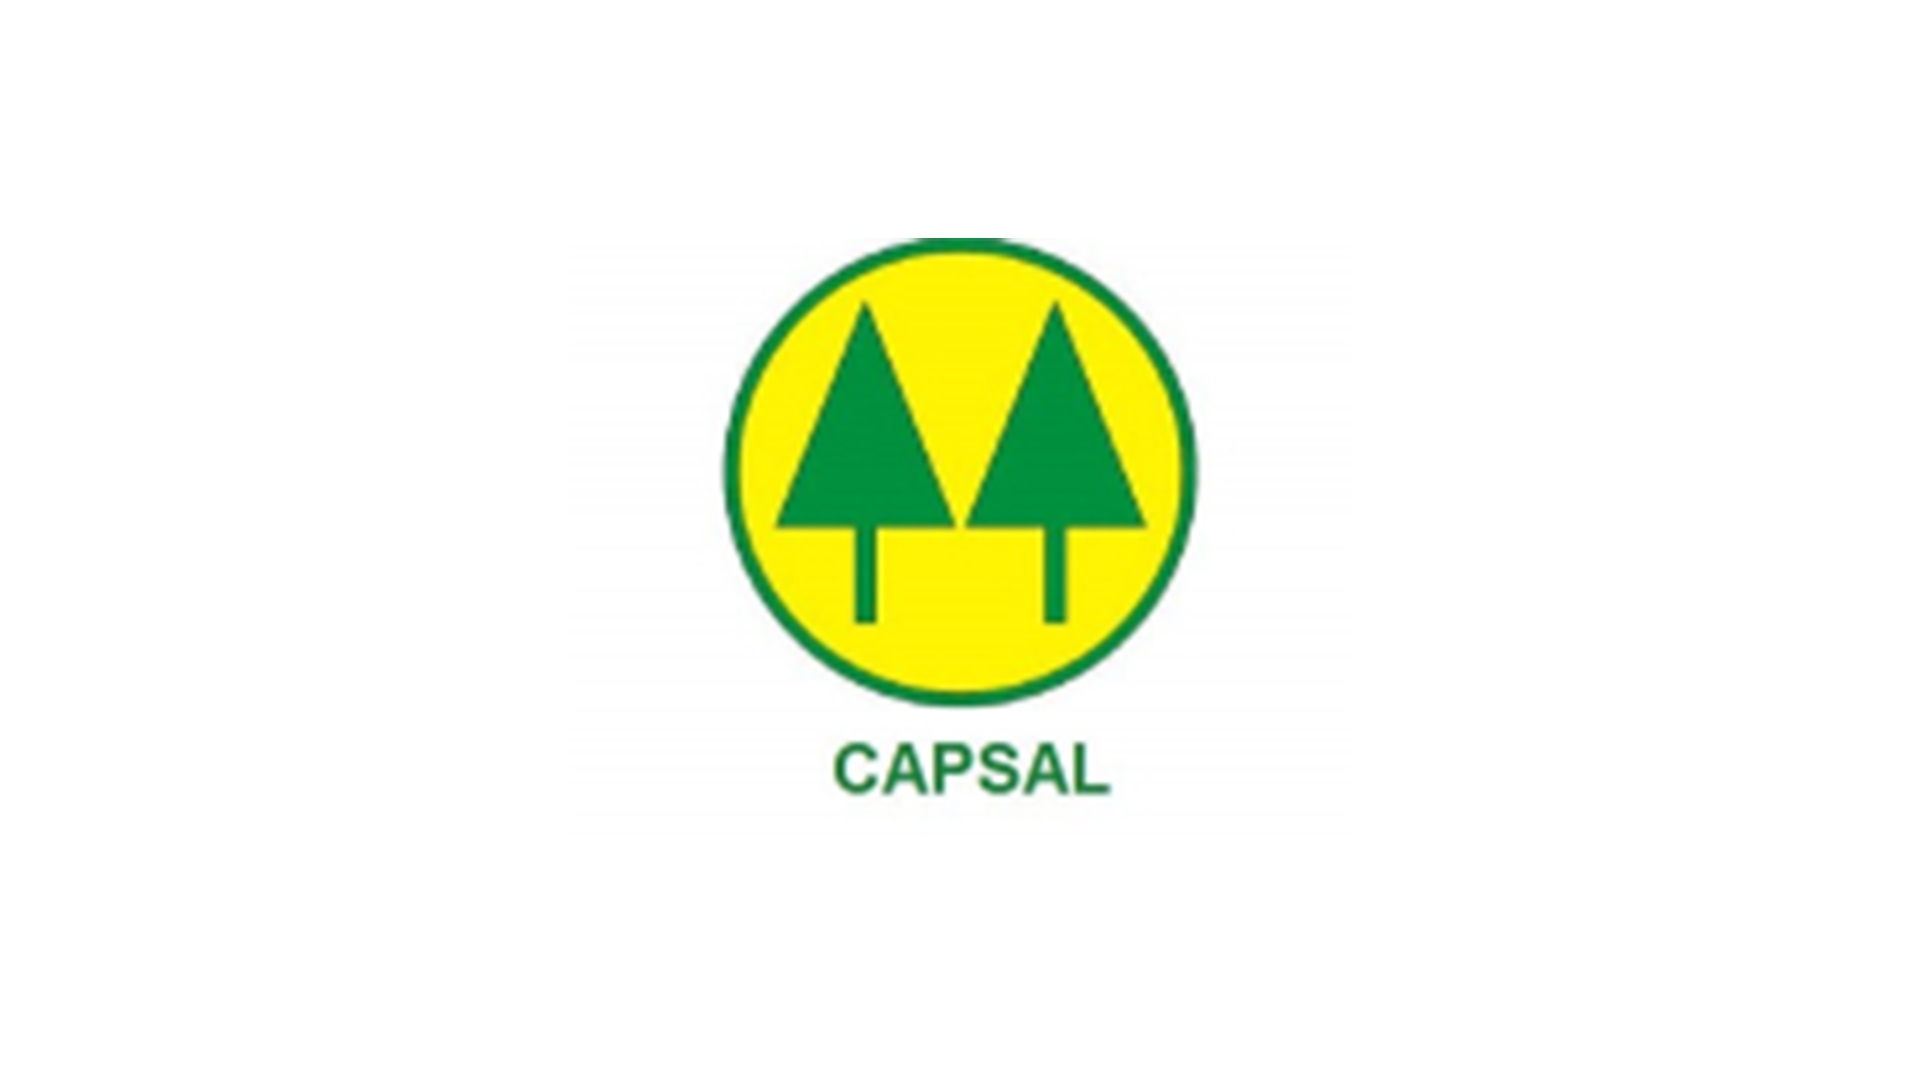 Capsal